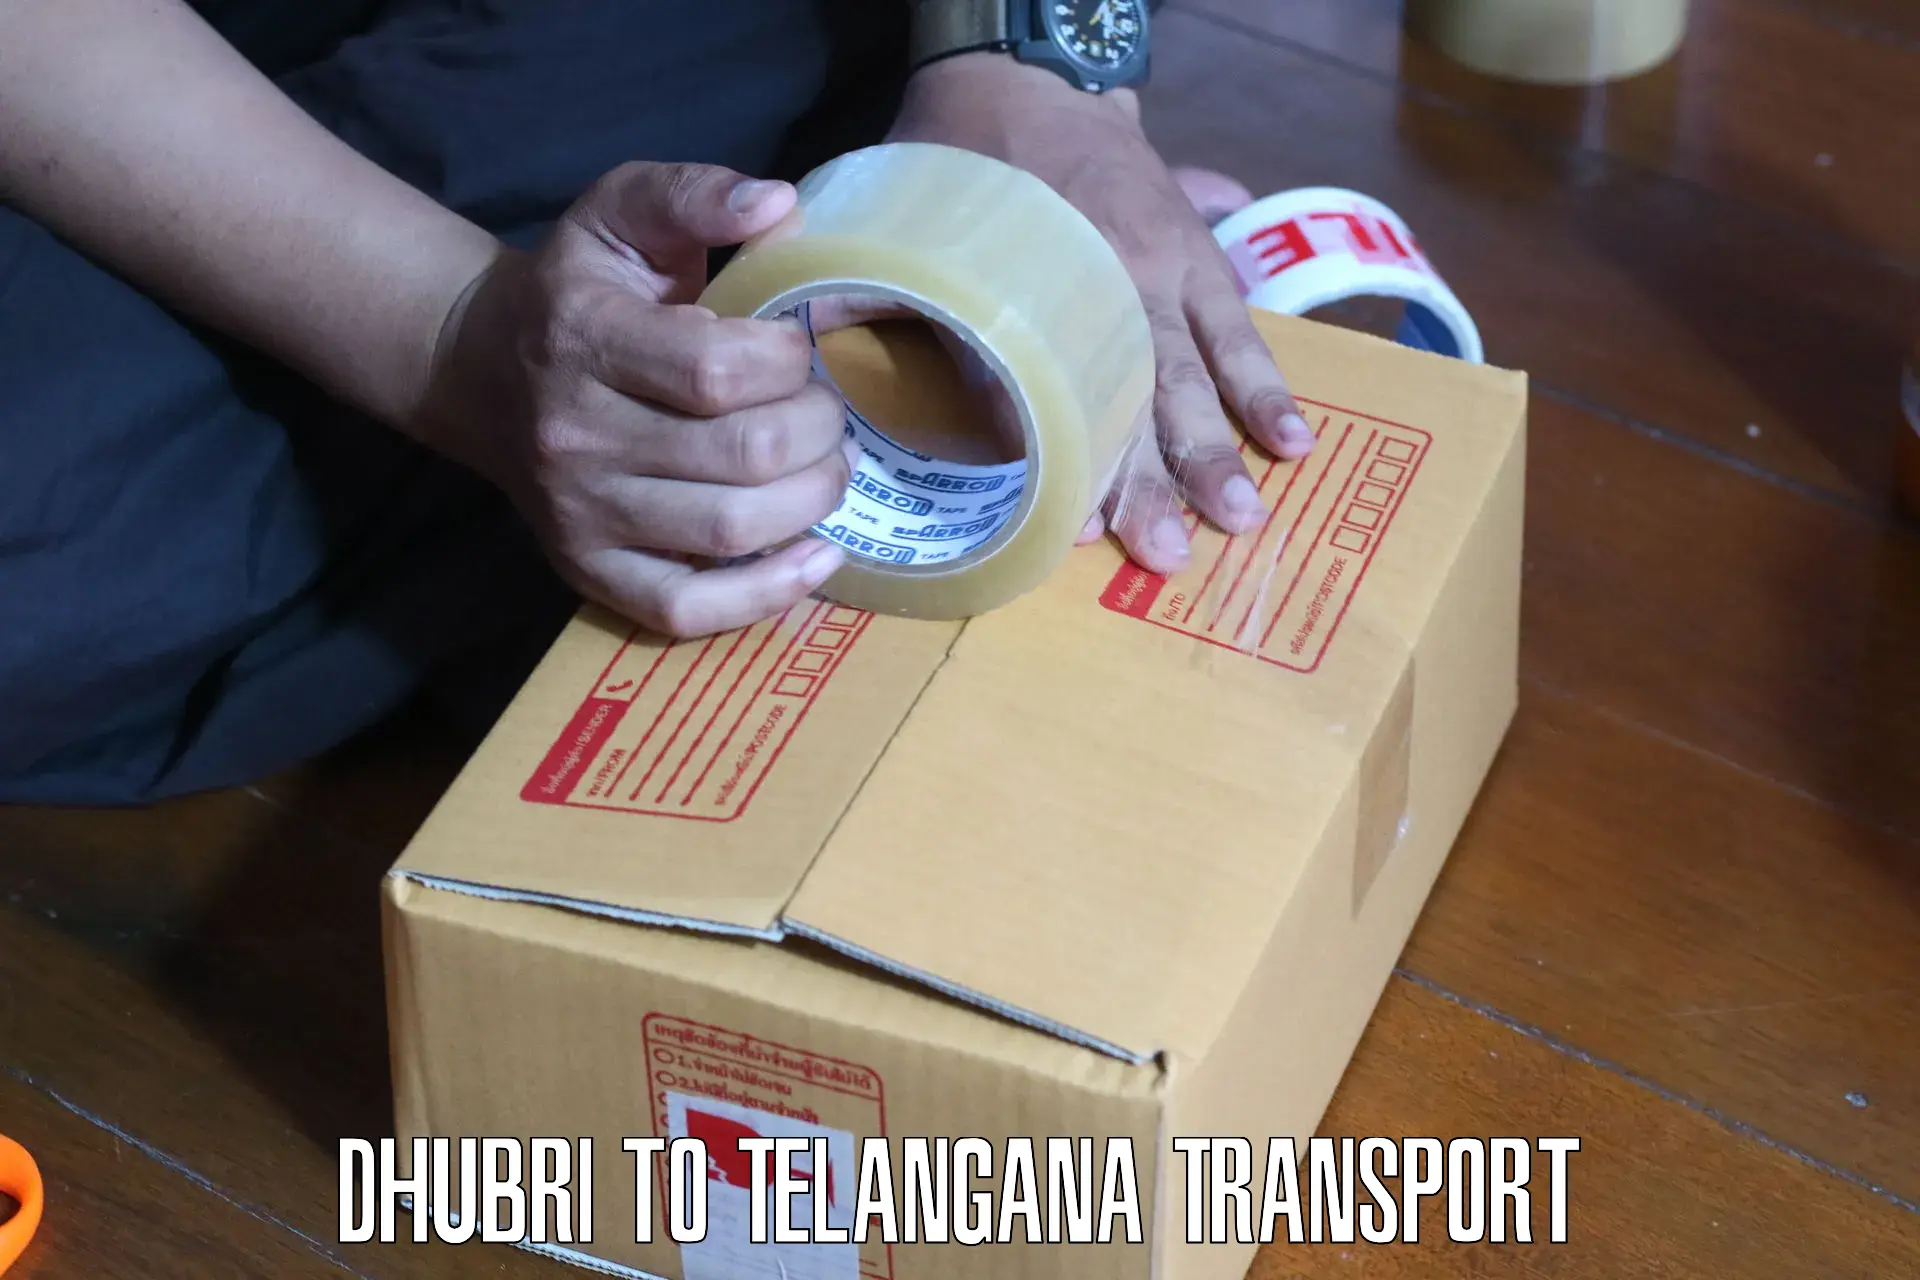 Transport services Dhubri to Gangadhara